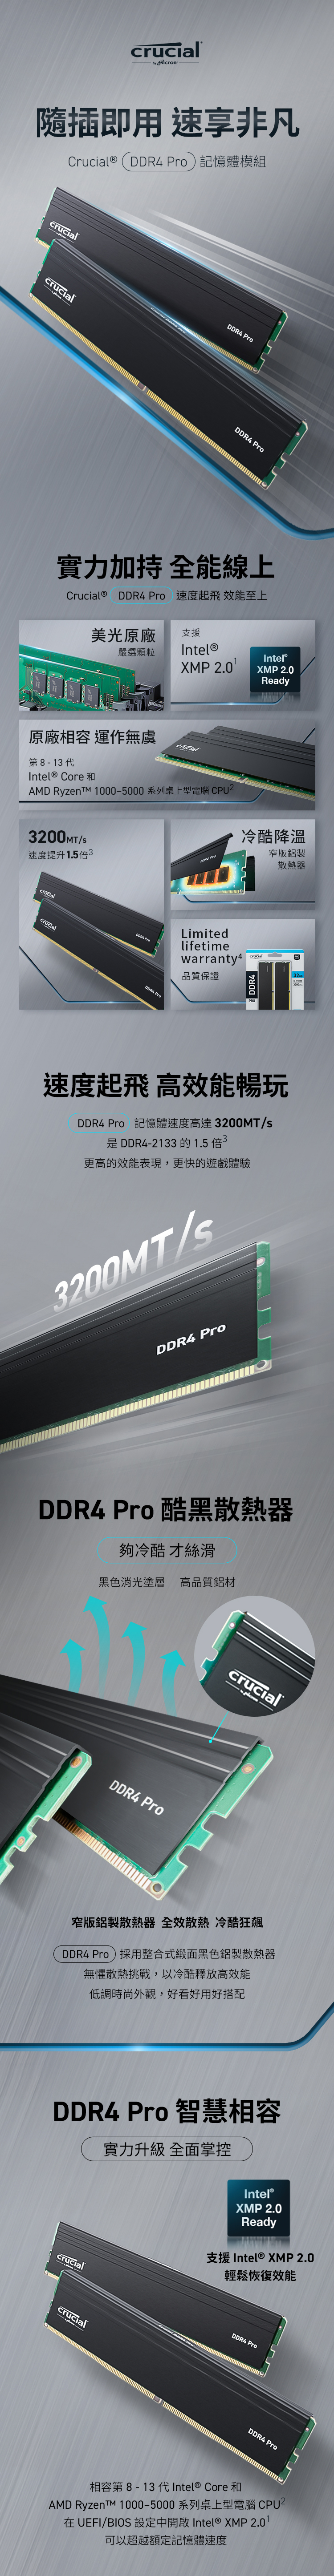 Crucial-PRO-DDR4-3200-內1.jpg